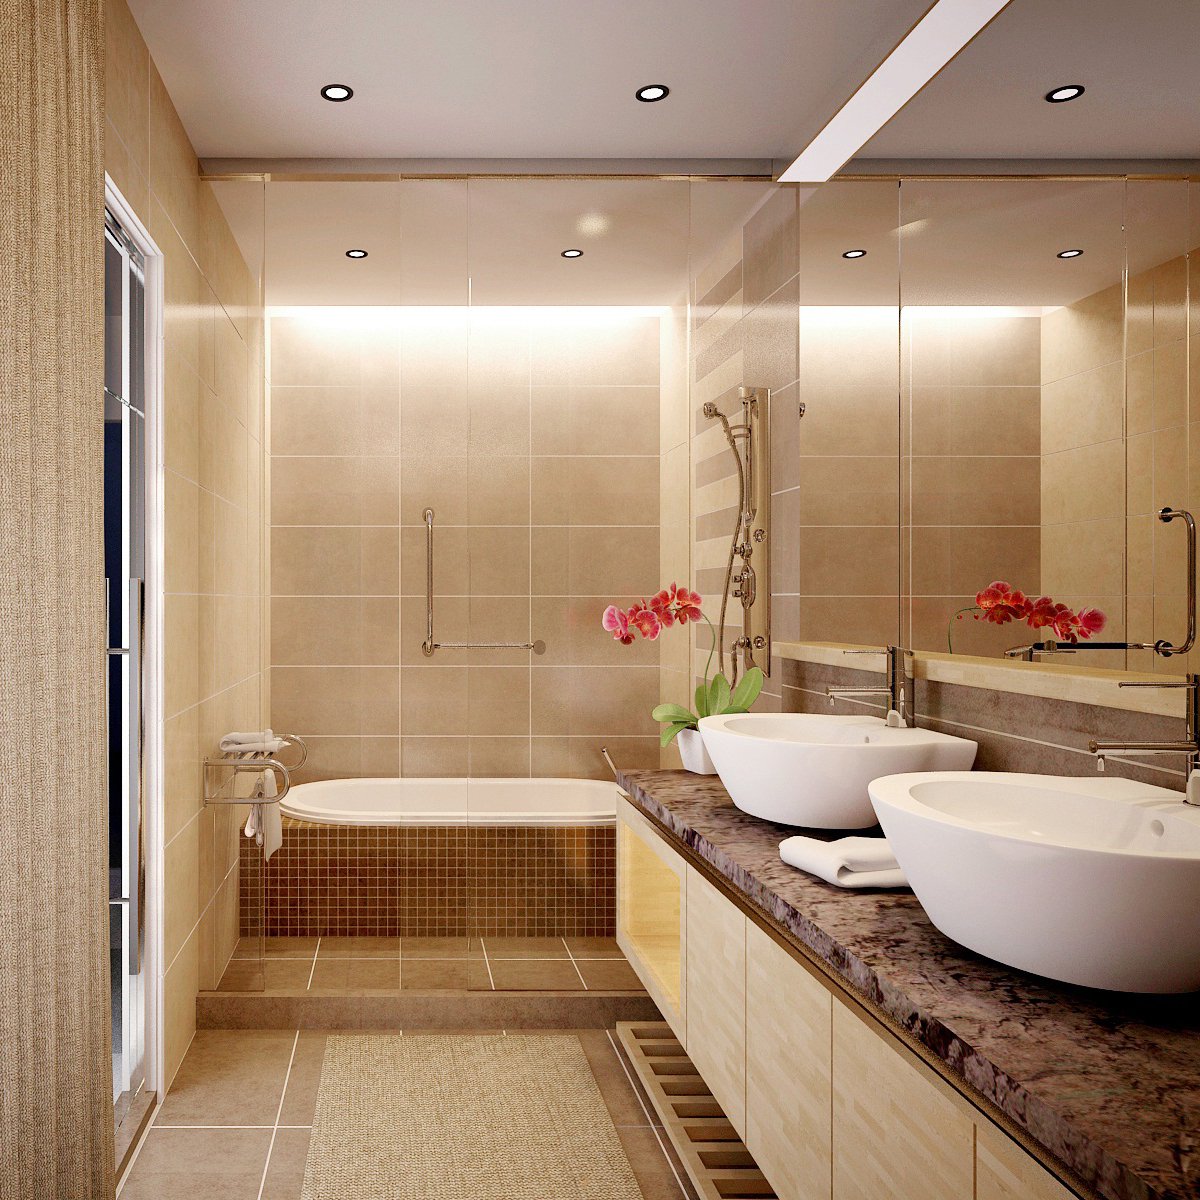 Thiết kế nội thất nhà tắm: Khám phá thiết kế nội thất nhà tắm sang trọng và tiện nghi để tạo ra không gian tắm hoàn hảo nhất. Với các tông màu trang nhã, tấm ốp tường đa dạng, và nhiều tùy chọn về thiết kế, bạn có thể tạo nên một không gian tắm đẹp và chức năng với thiết kế nội thất nhà tắm độc đáo. Hãy xem hình ảnh và cập nhật cho tòa nhà của bạn!